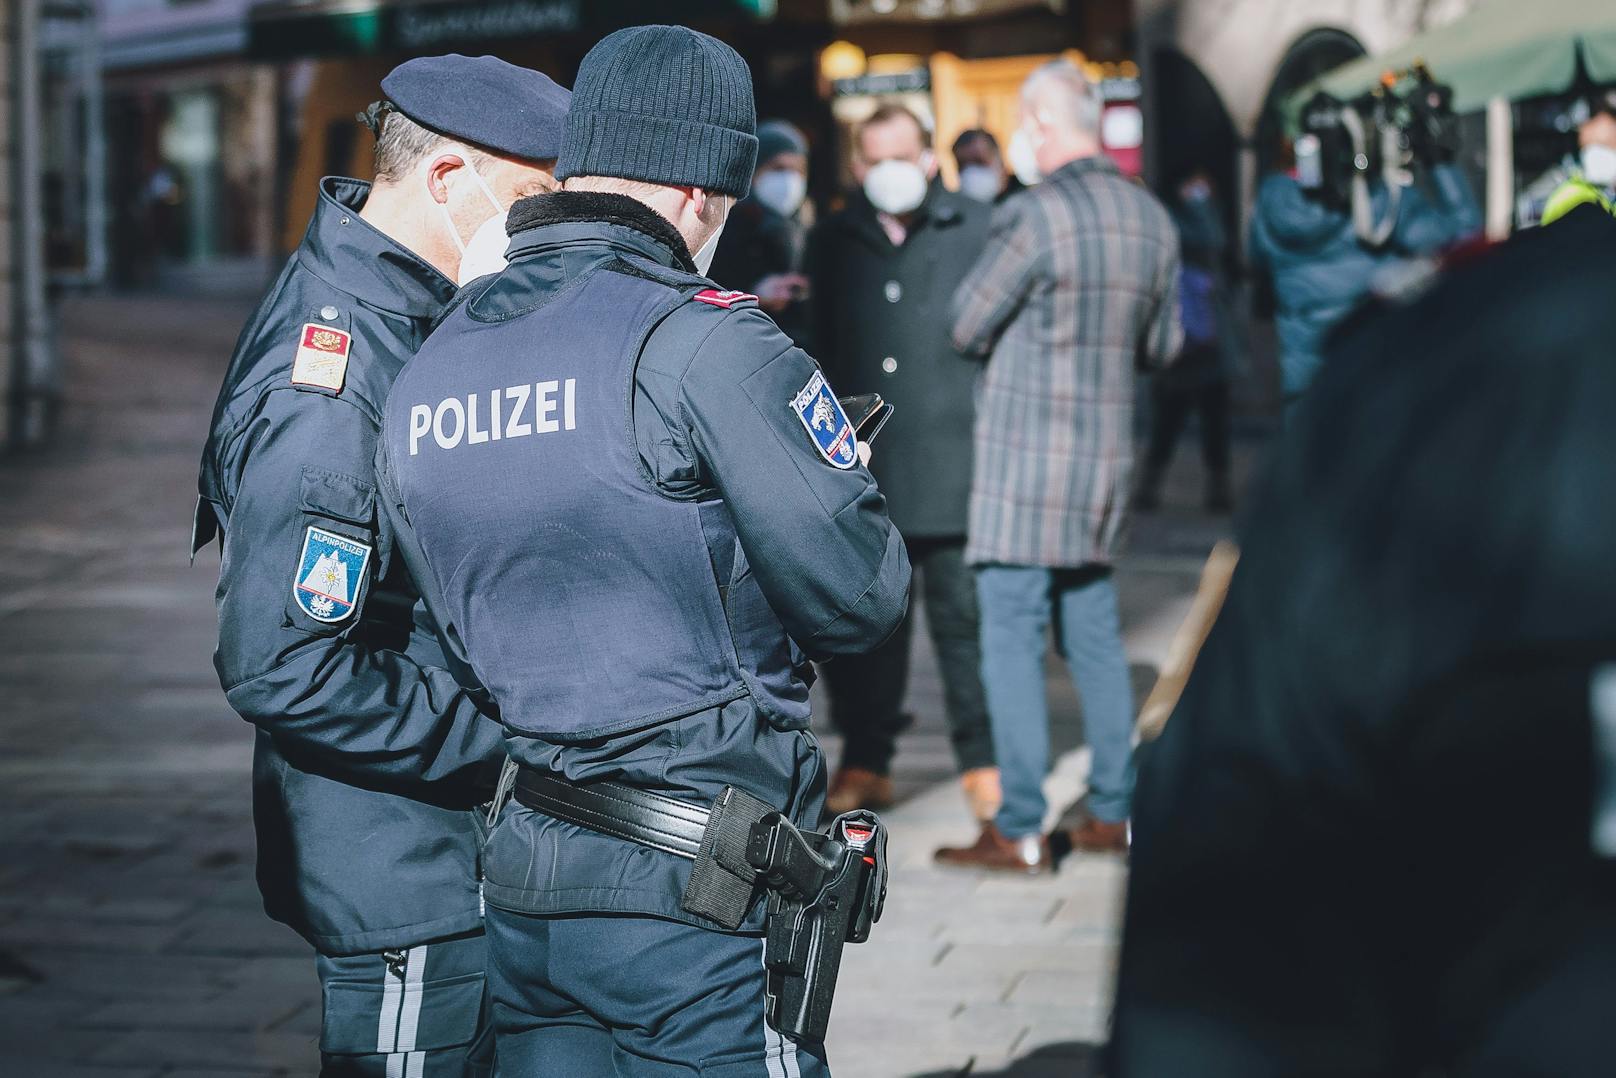 Die Polizei bei Kontrollen: In Tirol kam es zu einem Freiheitsentzug.